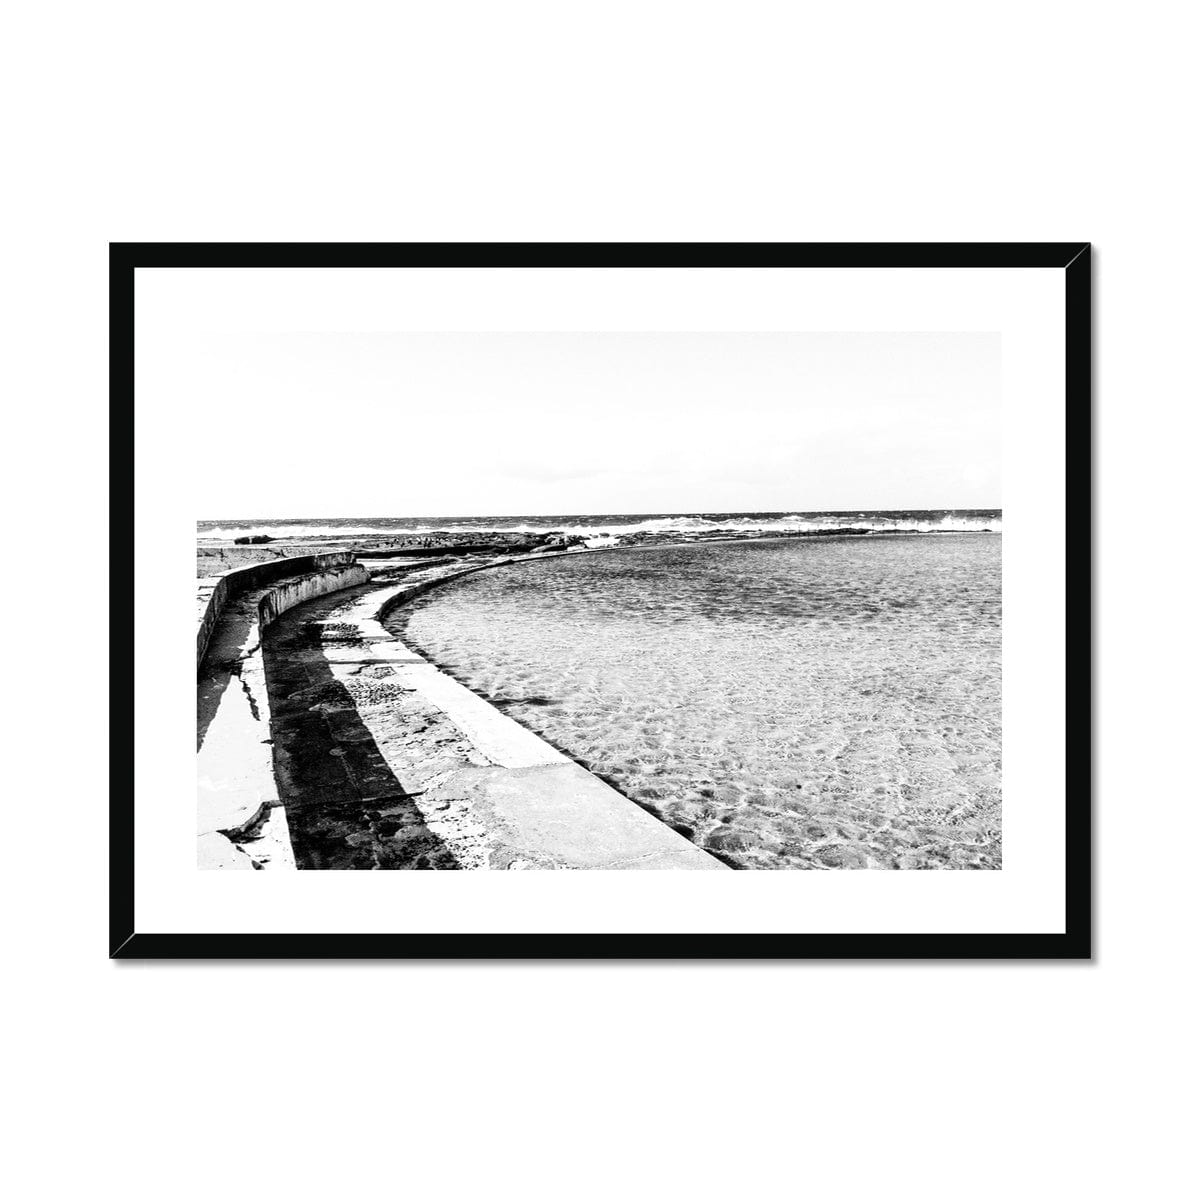 Adam Davies Framed 28"x20" / Black Frame Black & White Ocean Framed Pool & Mounted Print